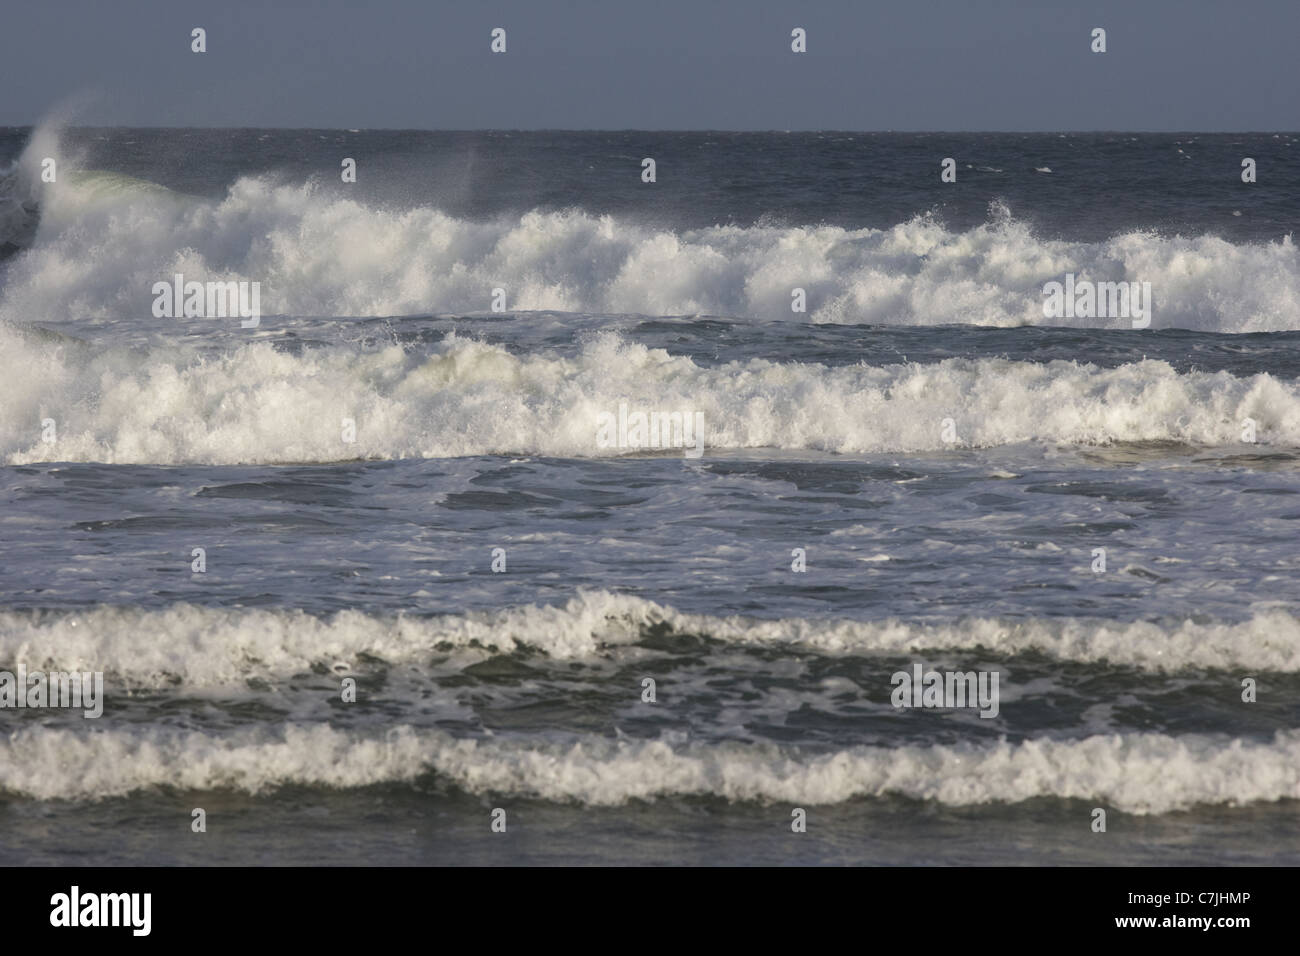 Las olas que rompen en el Atlántico norte castlerock Beach County Londonderry Derry, Irlanda del Norte, reino unido Foto de stock